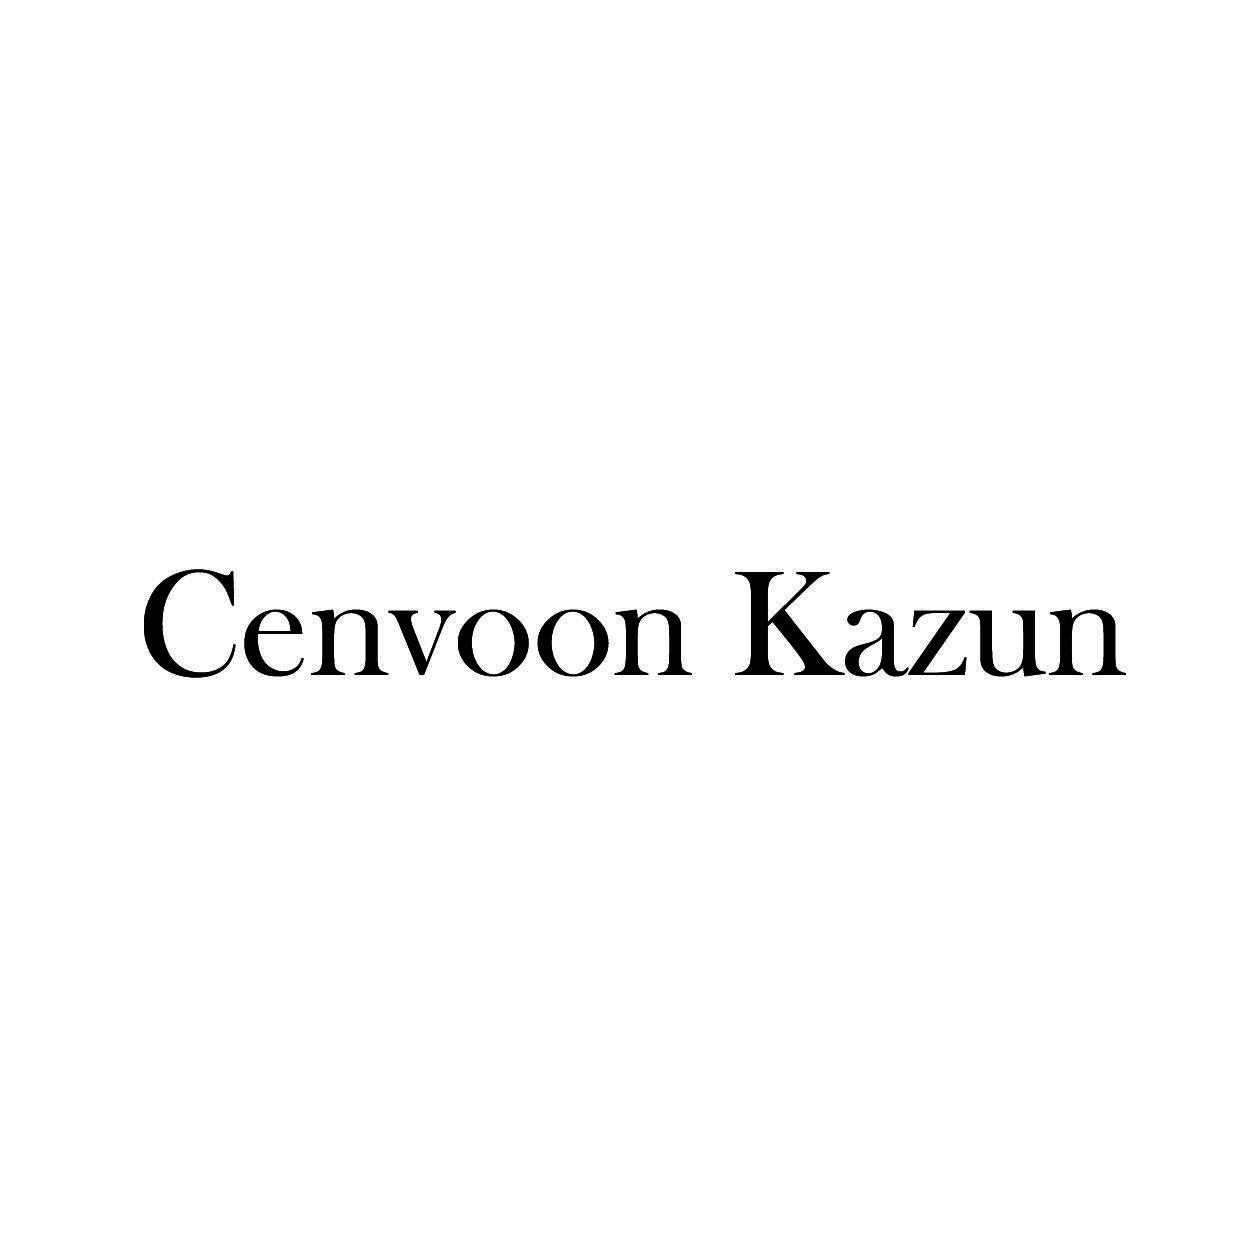 CENVOON KAZUN